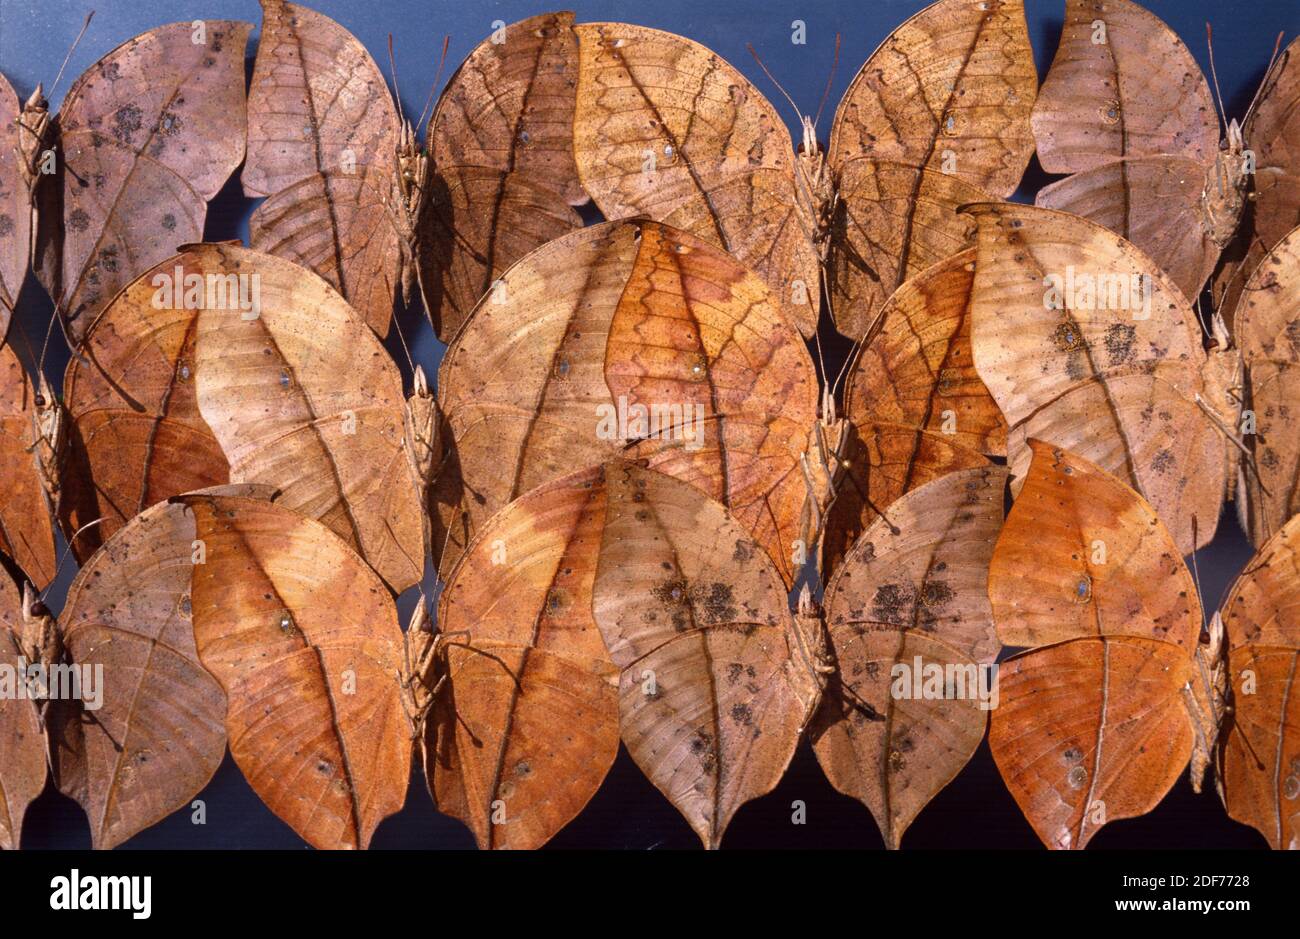 La foglia di oro o foglia morta (Kallima inachus) è una farfalla criptica originaria del sud-est asiatico. Variabilità del lato ventrale. Foto Stock